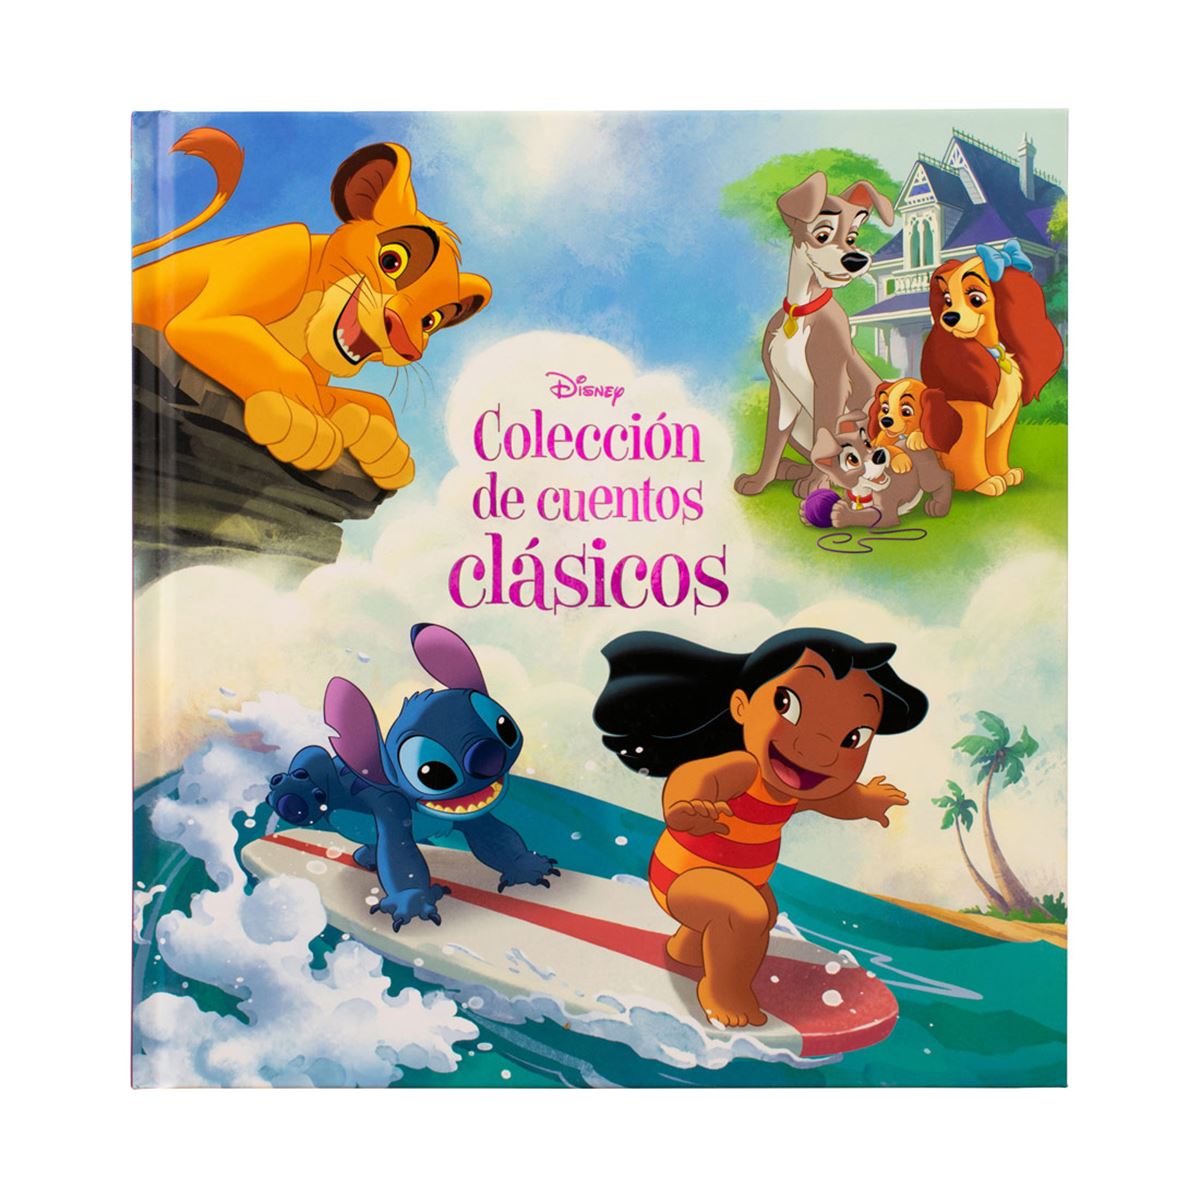 Tesoro de Cuentos Disney Colección de Cuentos, Libros